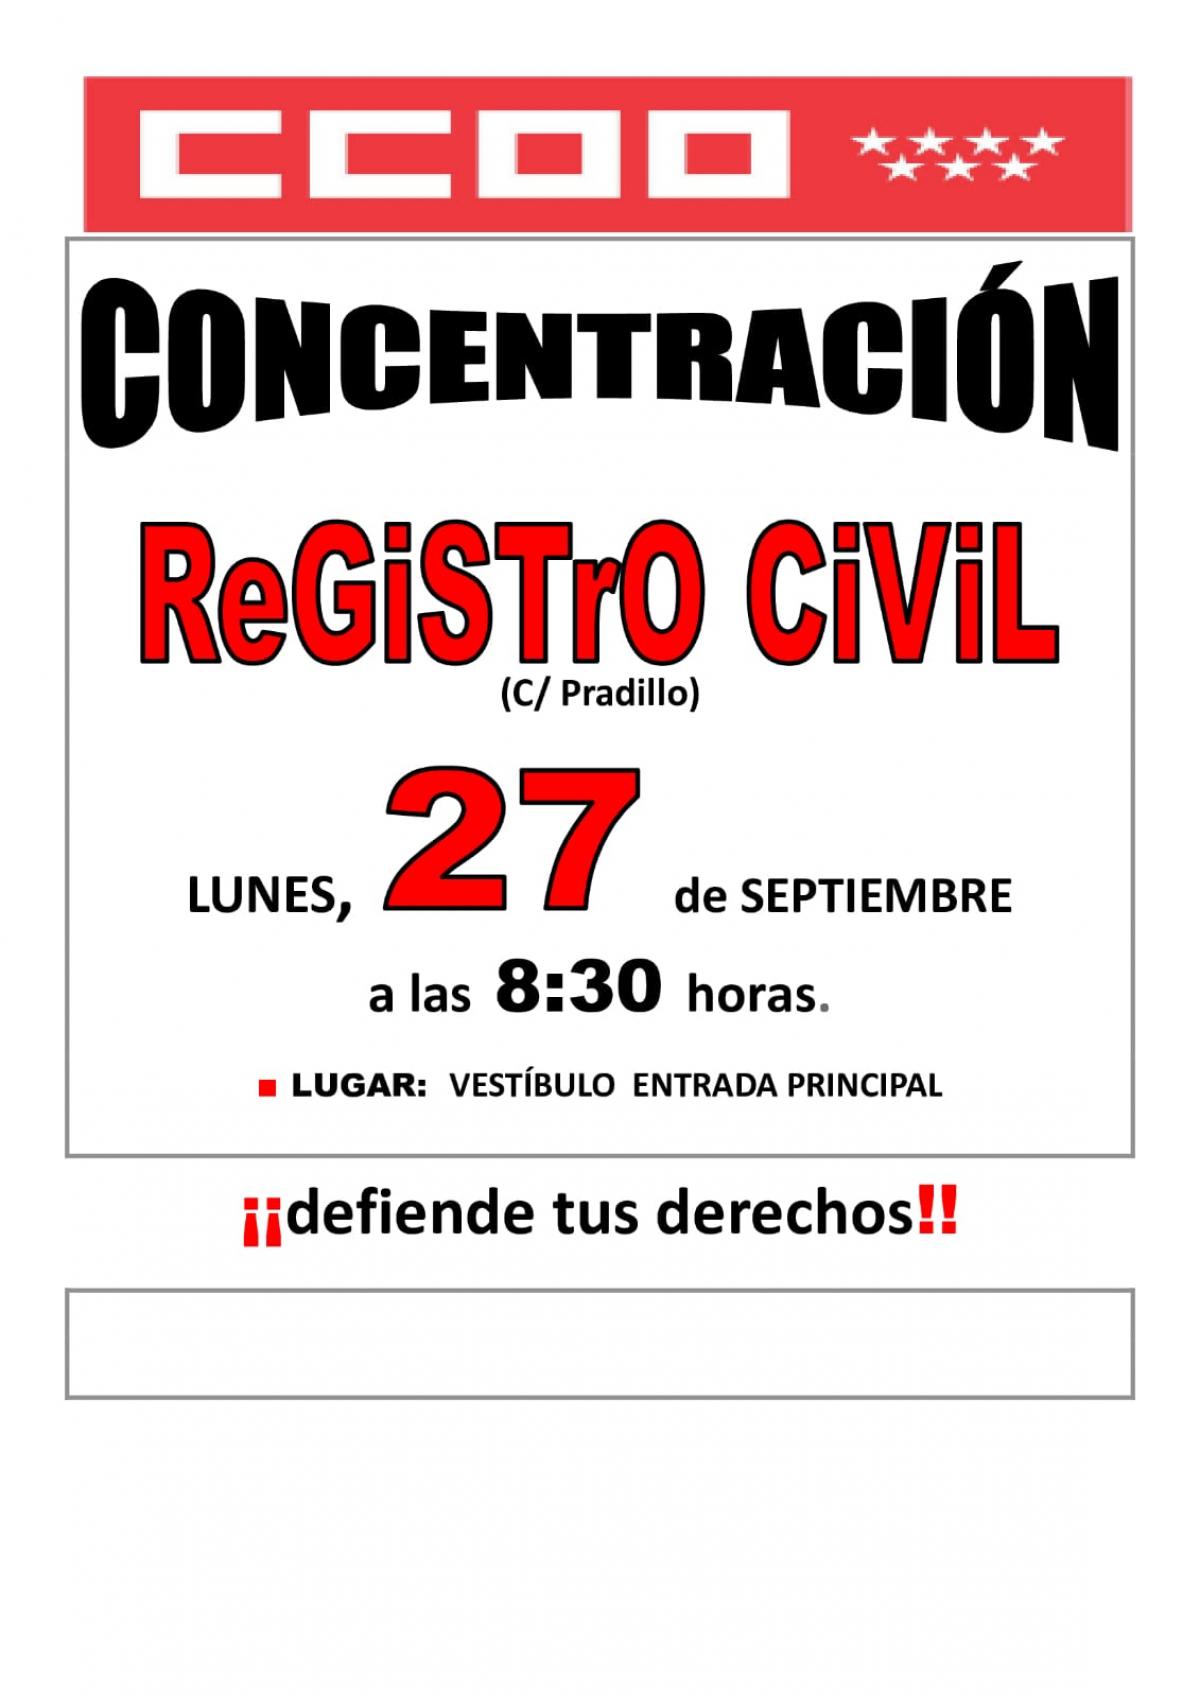 Concentración Registro Civil de Madrid 27 septiembre 2021